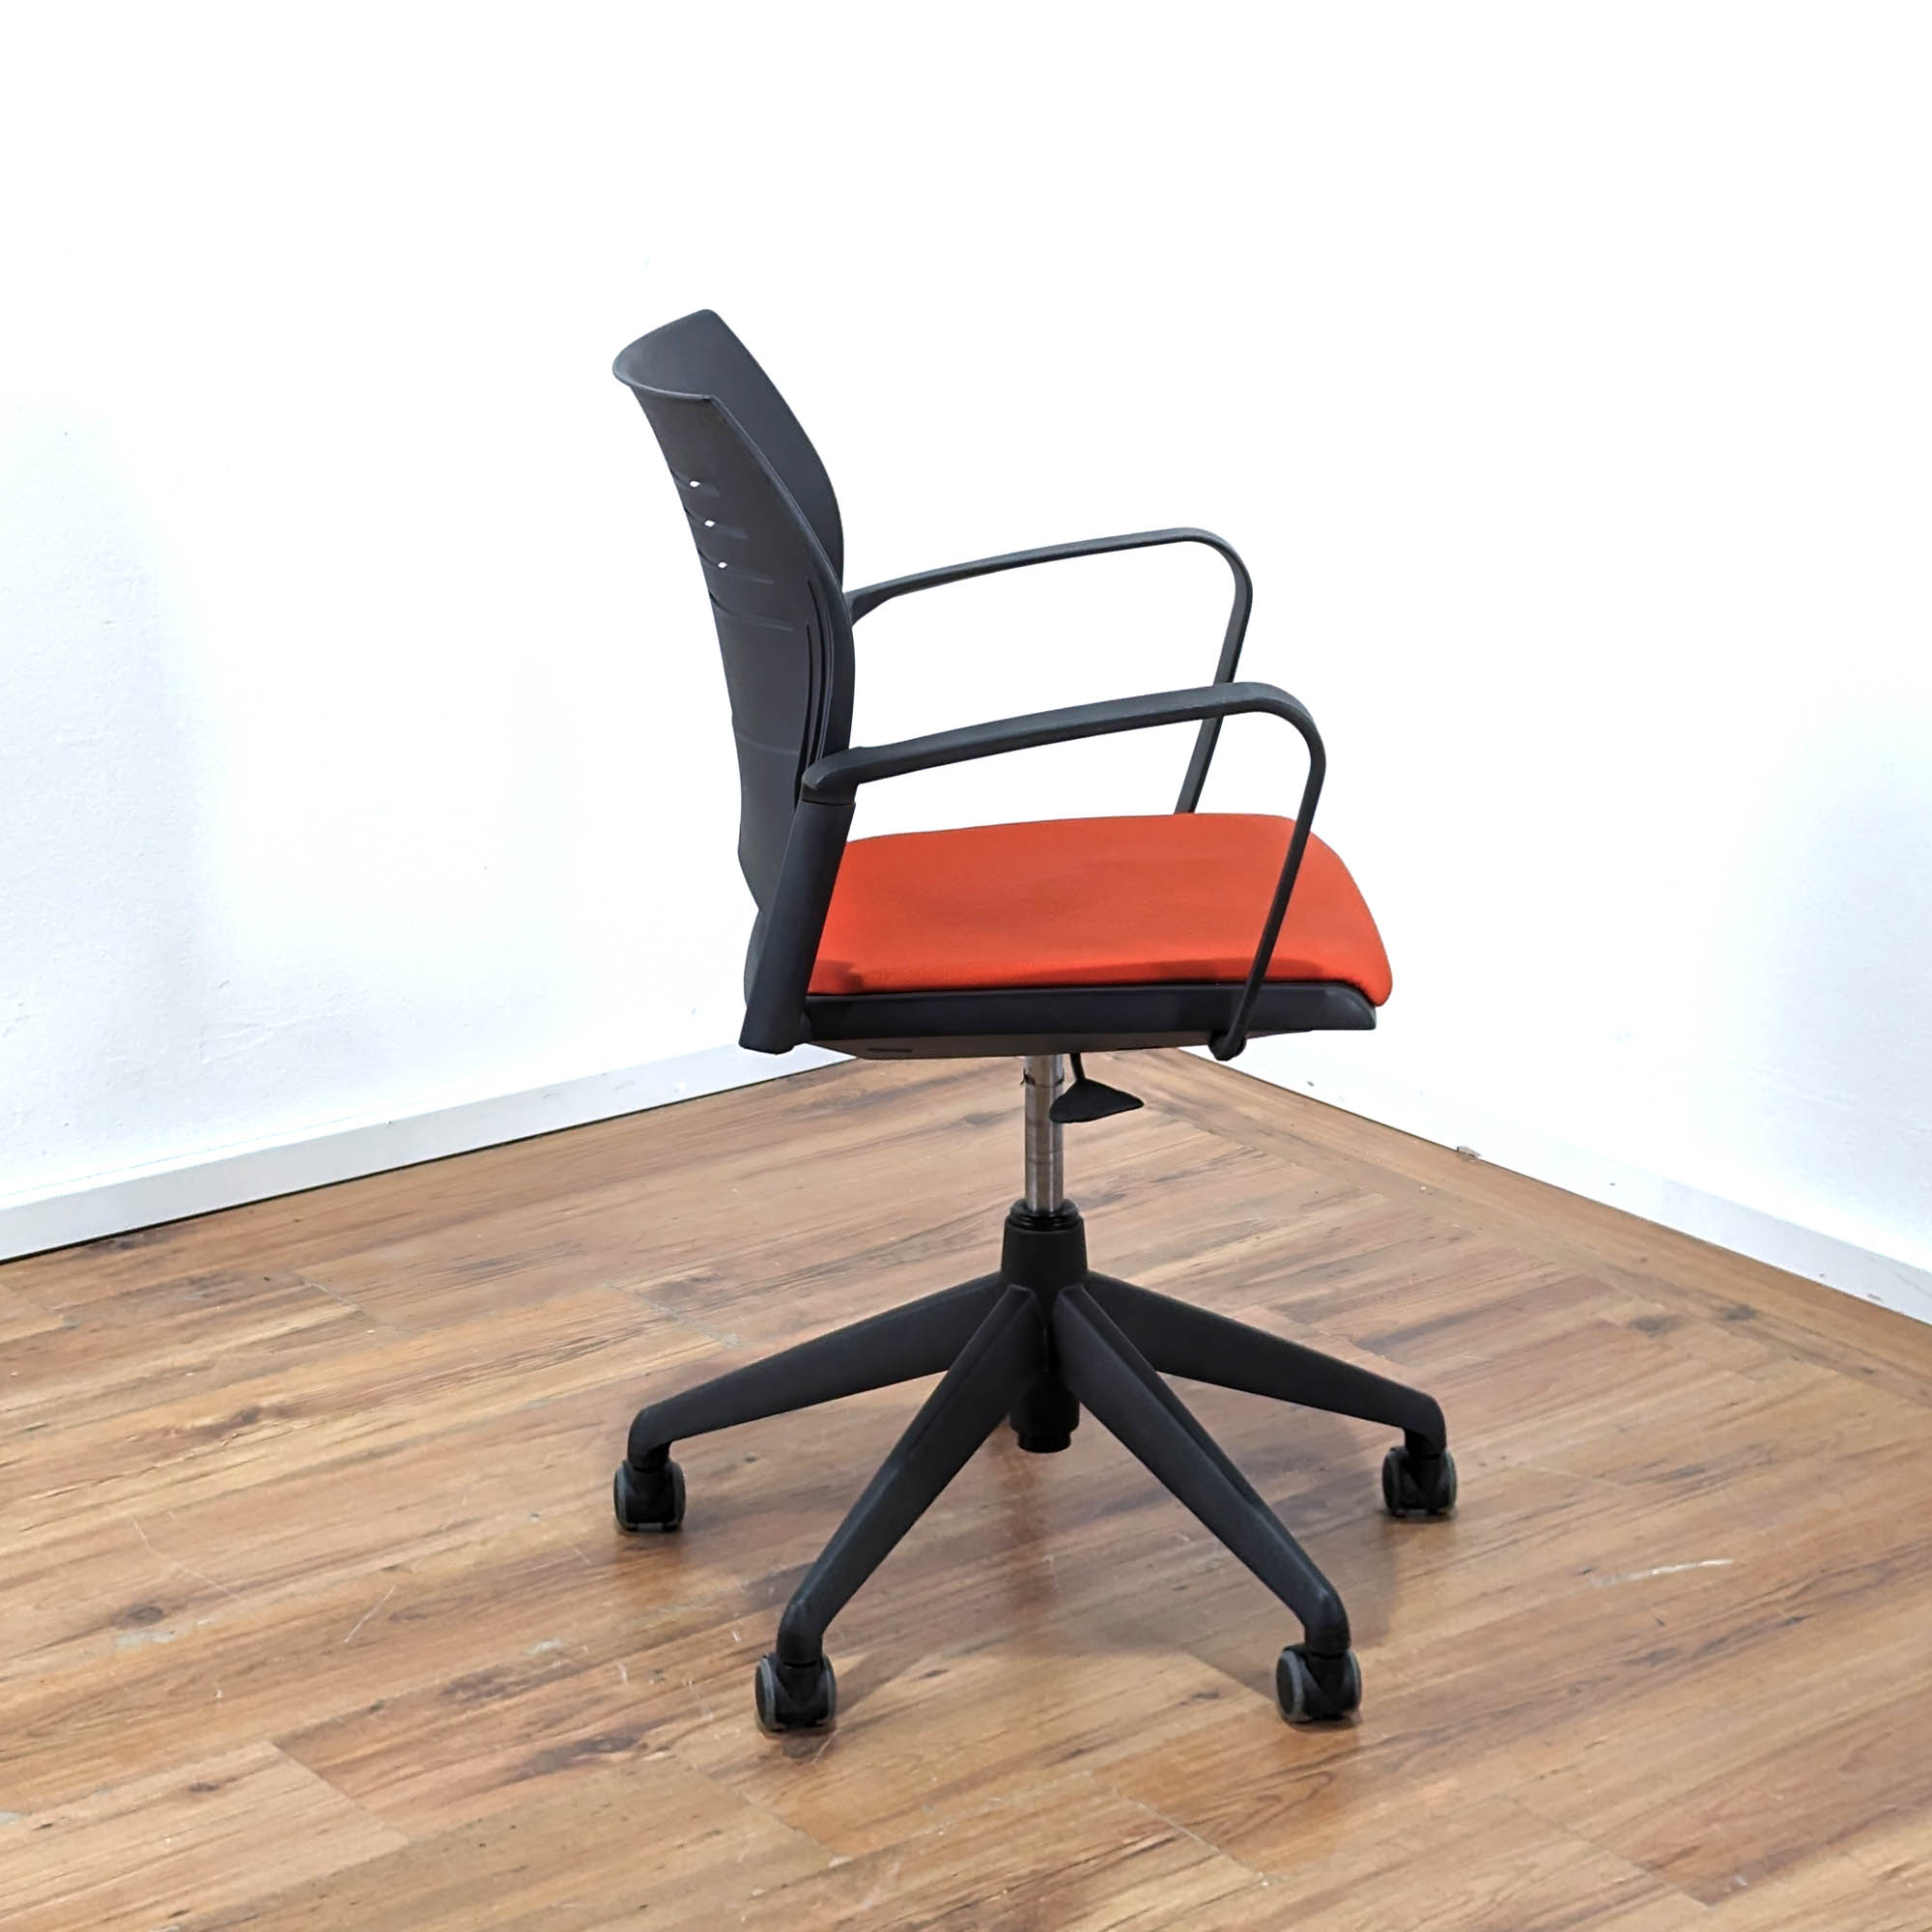 Konferenzstuhl "A-Spacio" auf Rollen - höhenverstellbar - Sitzpolster Stoff rot - Gestell schwarz - Armlehnen - Rückenlehne mit Belüftungsschlitzen